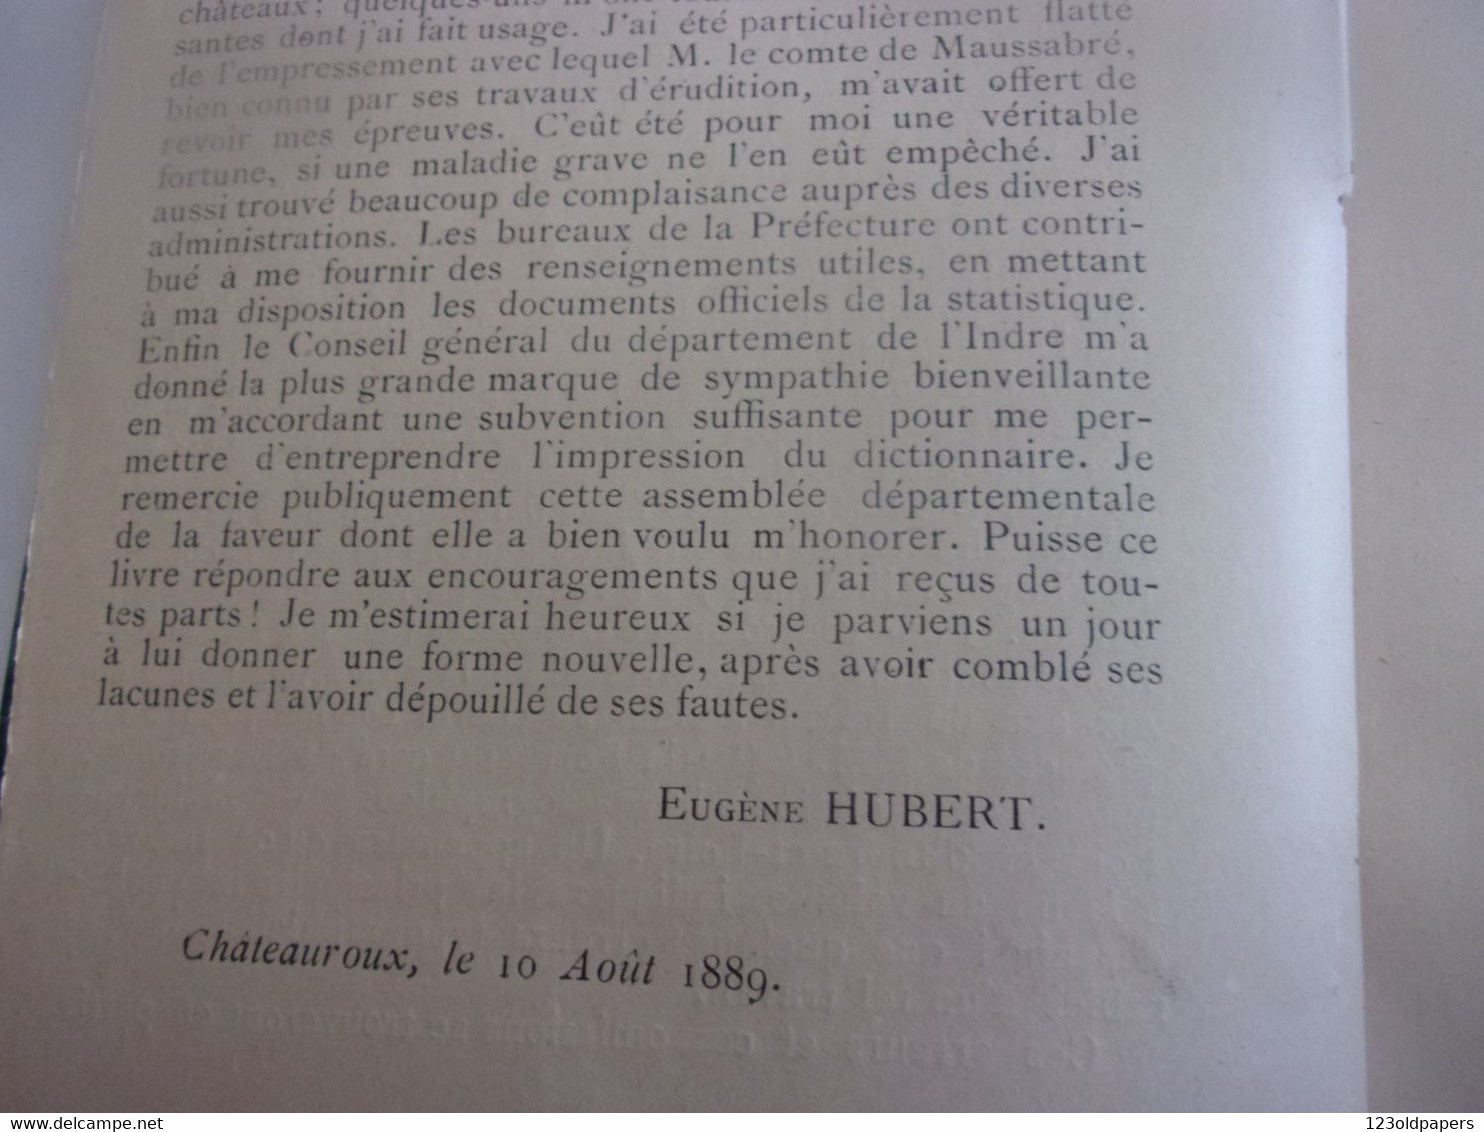 ️  BERRY INDRE 1889 EO  Dictionnaire Historique, Géographique Et Statistique De L'Indre De Eugène Hubert - Centre - Val De Loire